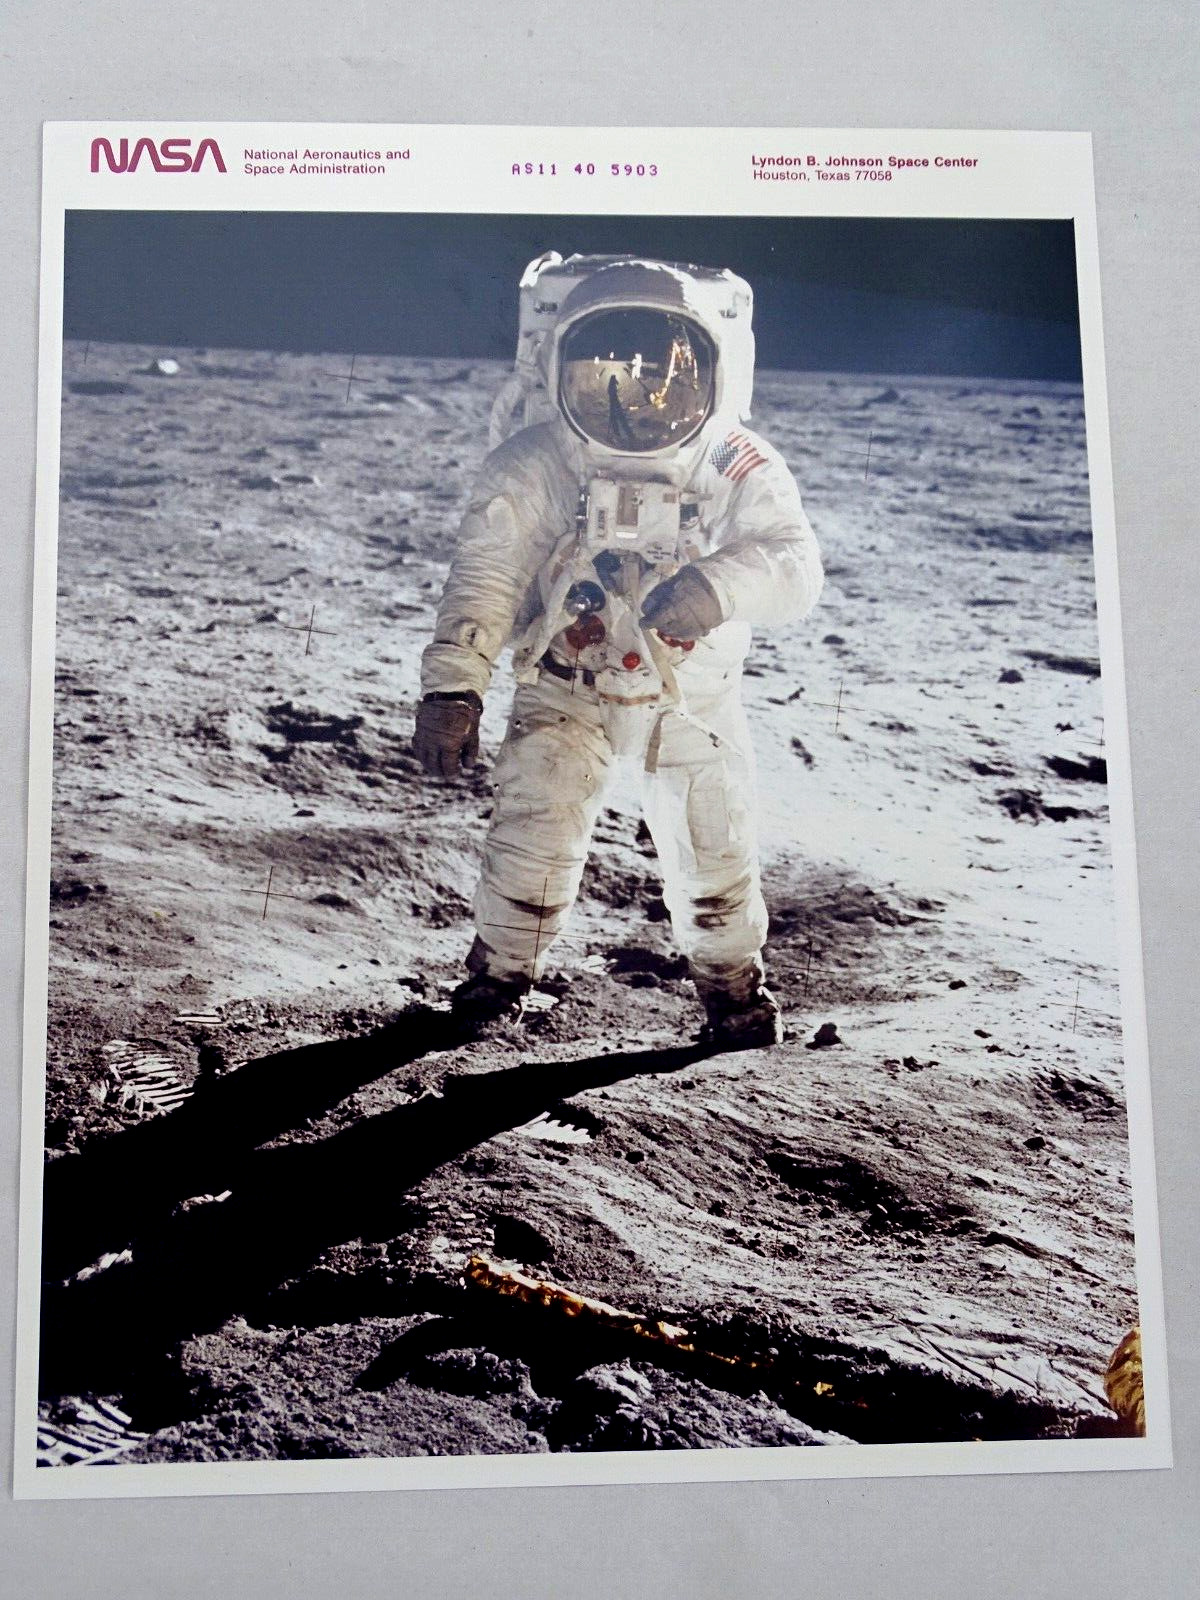 NASA Red Letter Kodak Photo Apollo 11 Moon Landing Walk Aldrin Armstrong Vintage